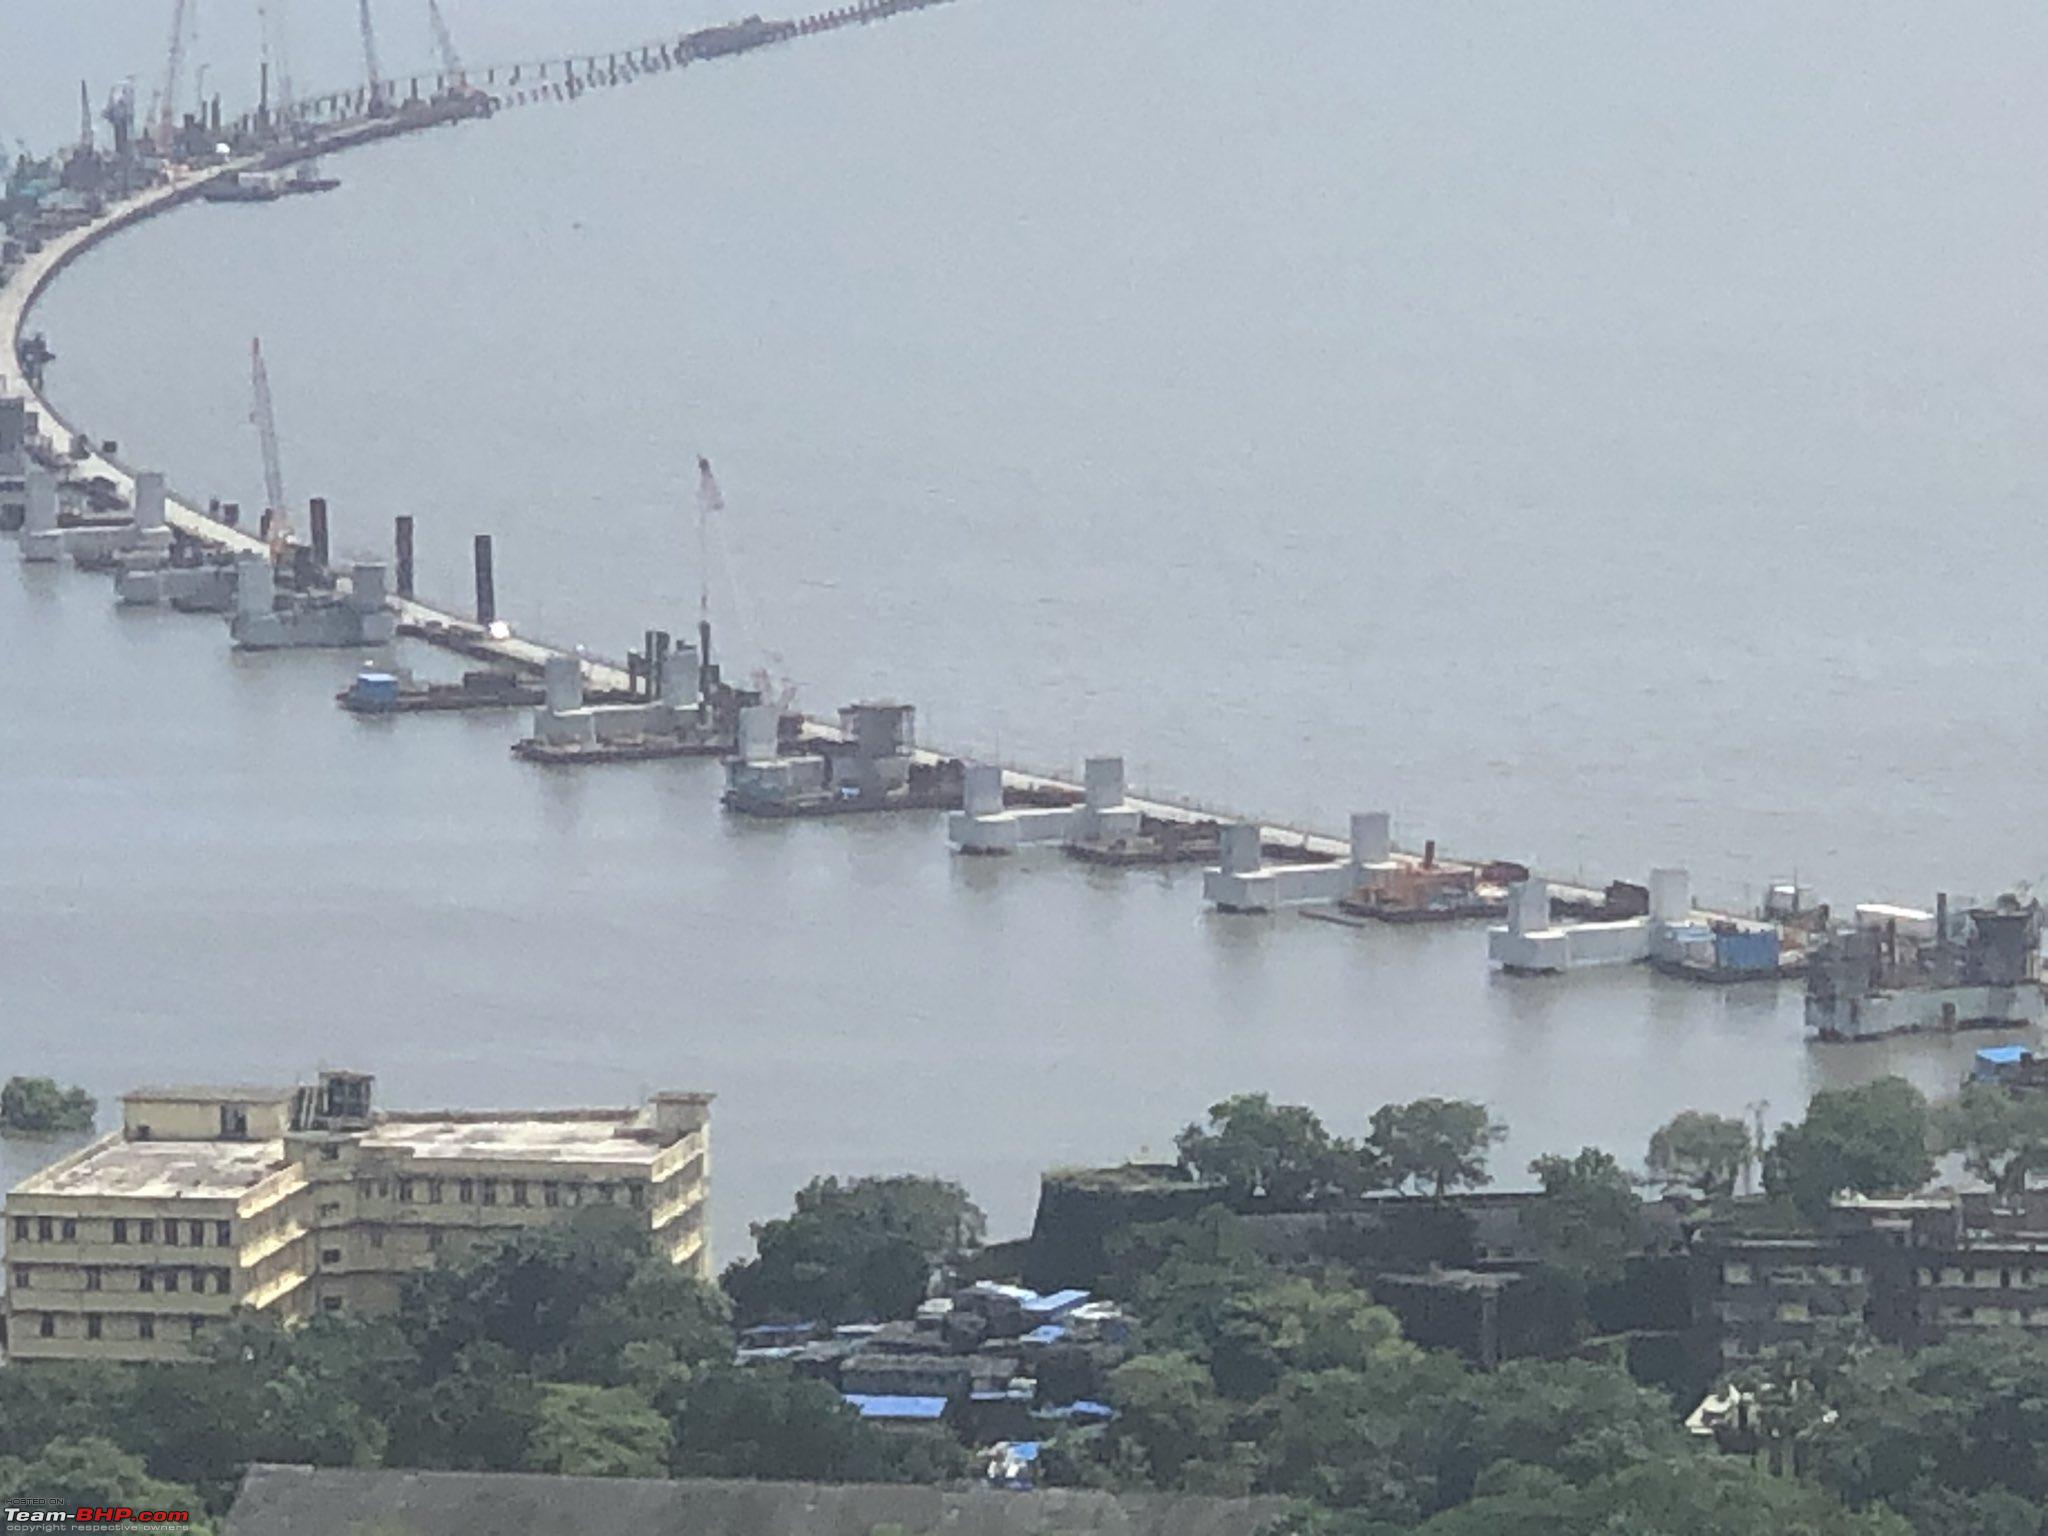 Mumbai Trans Harbour Link Connecting Southern Mumbai with Navi Mumbai